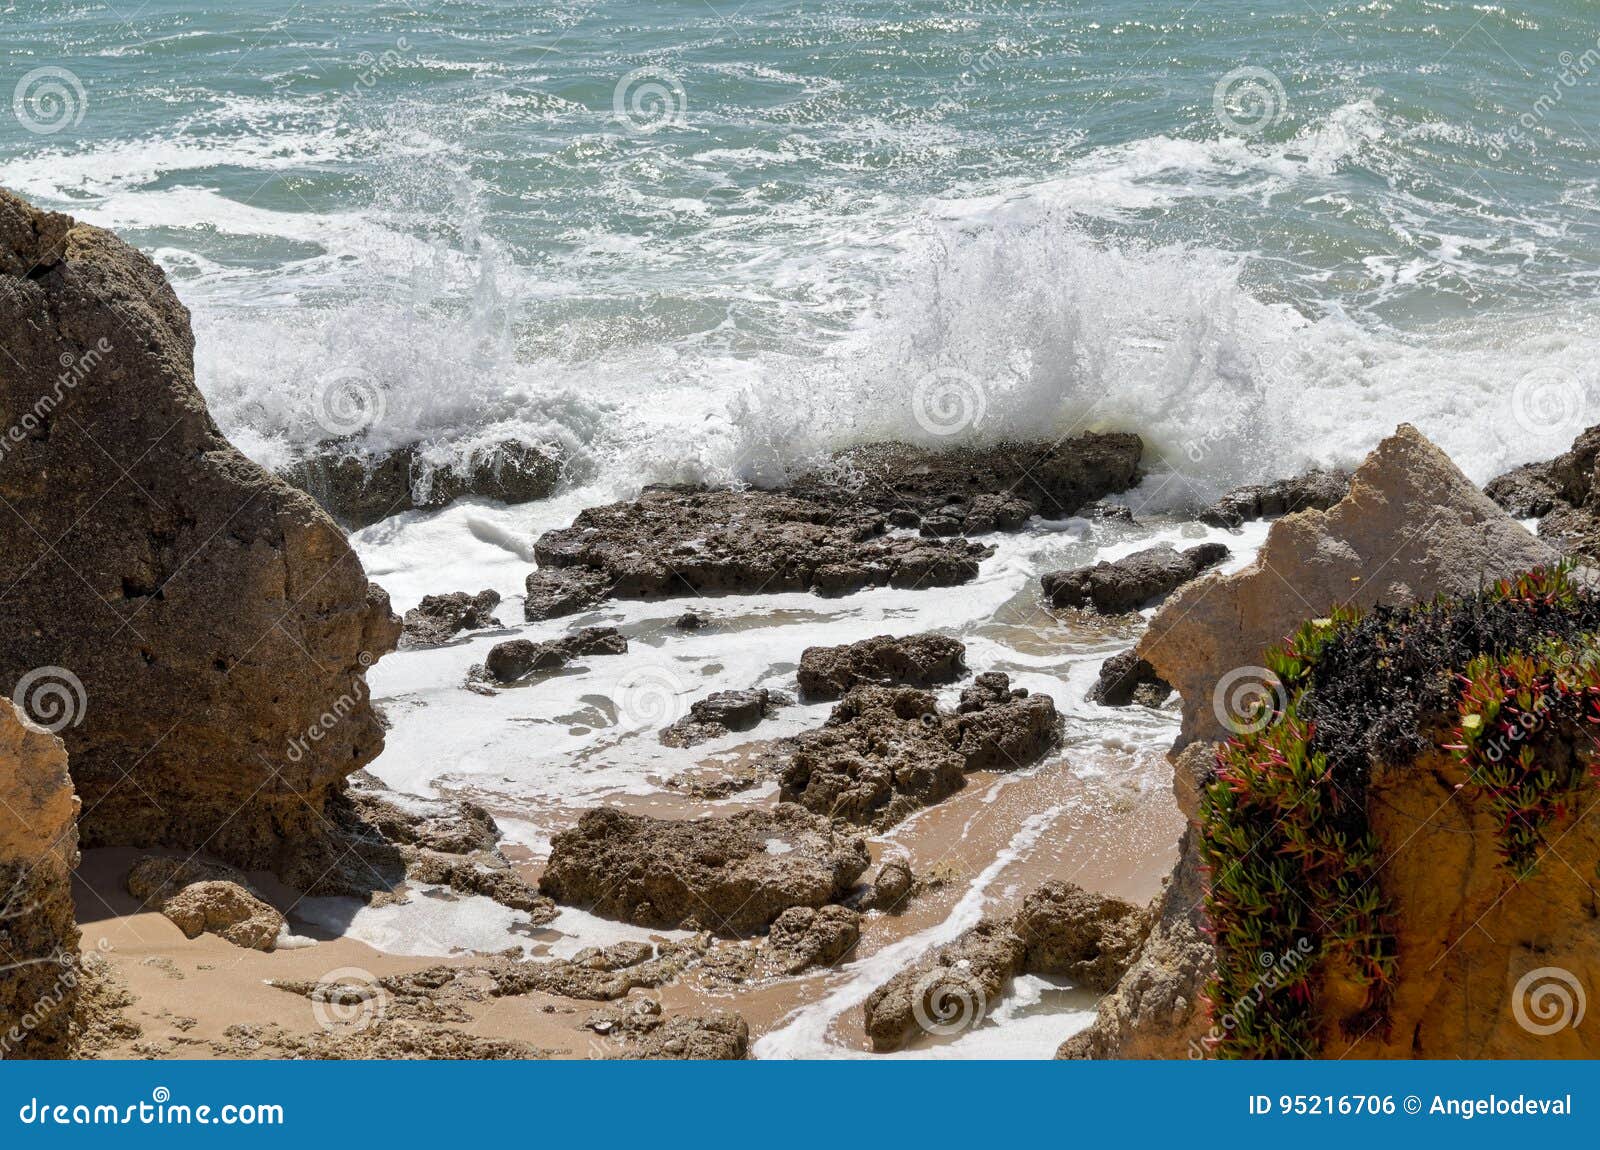 scene captured in chiringuitos beach. albufeira, portugal